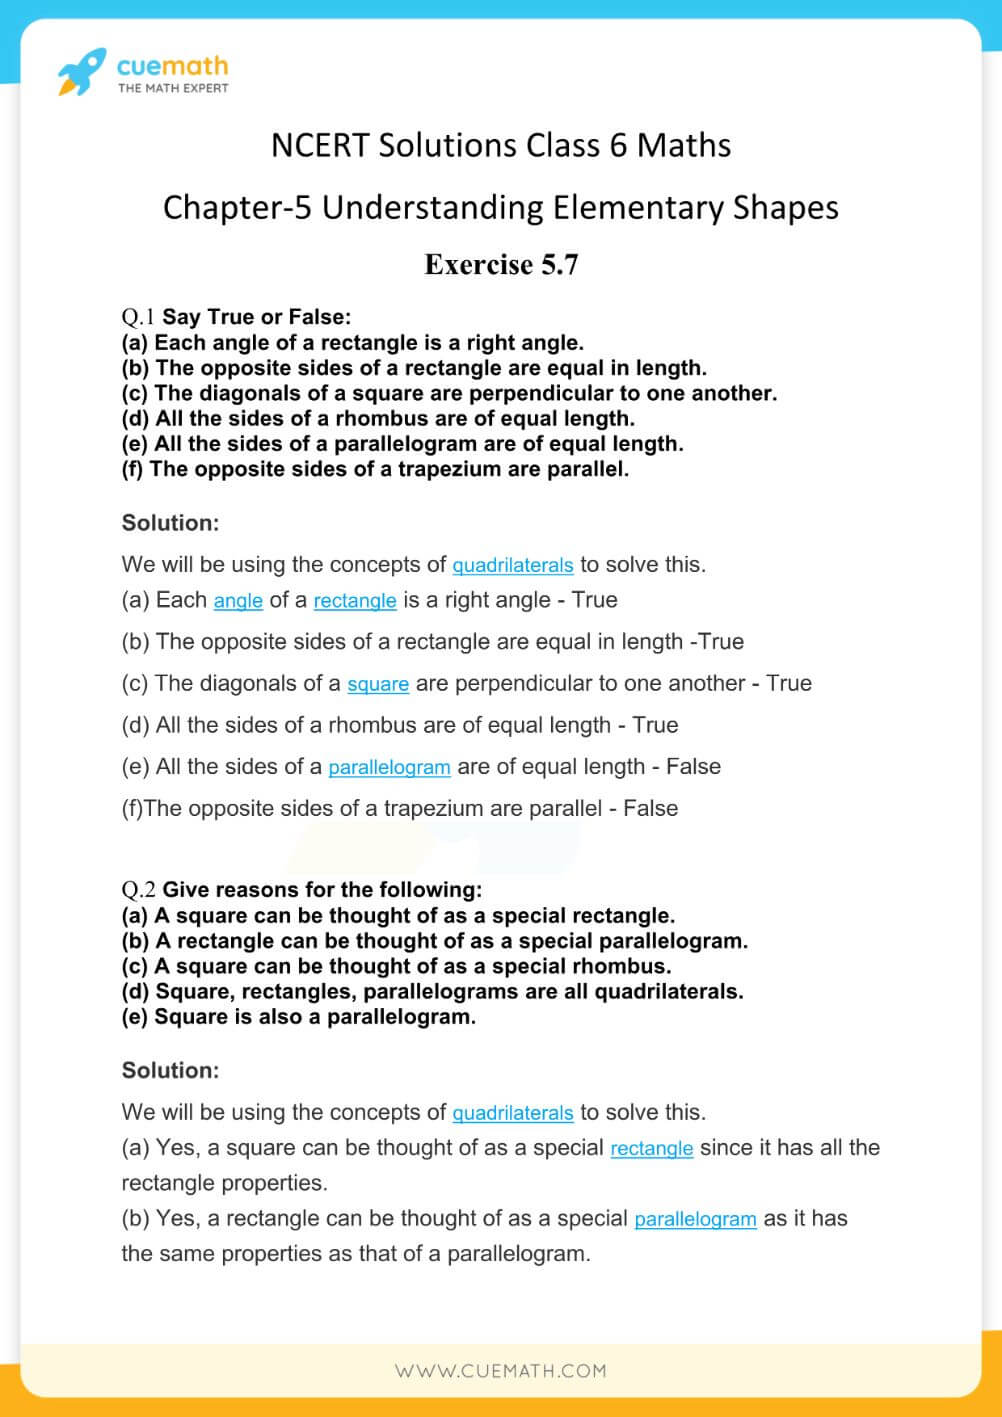 NCERT Solutions Class 6 Maths Chapter 5-28